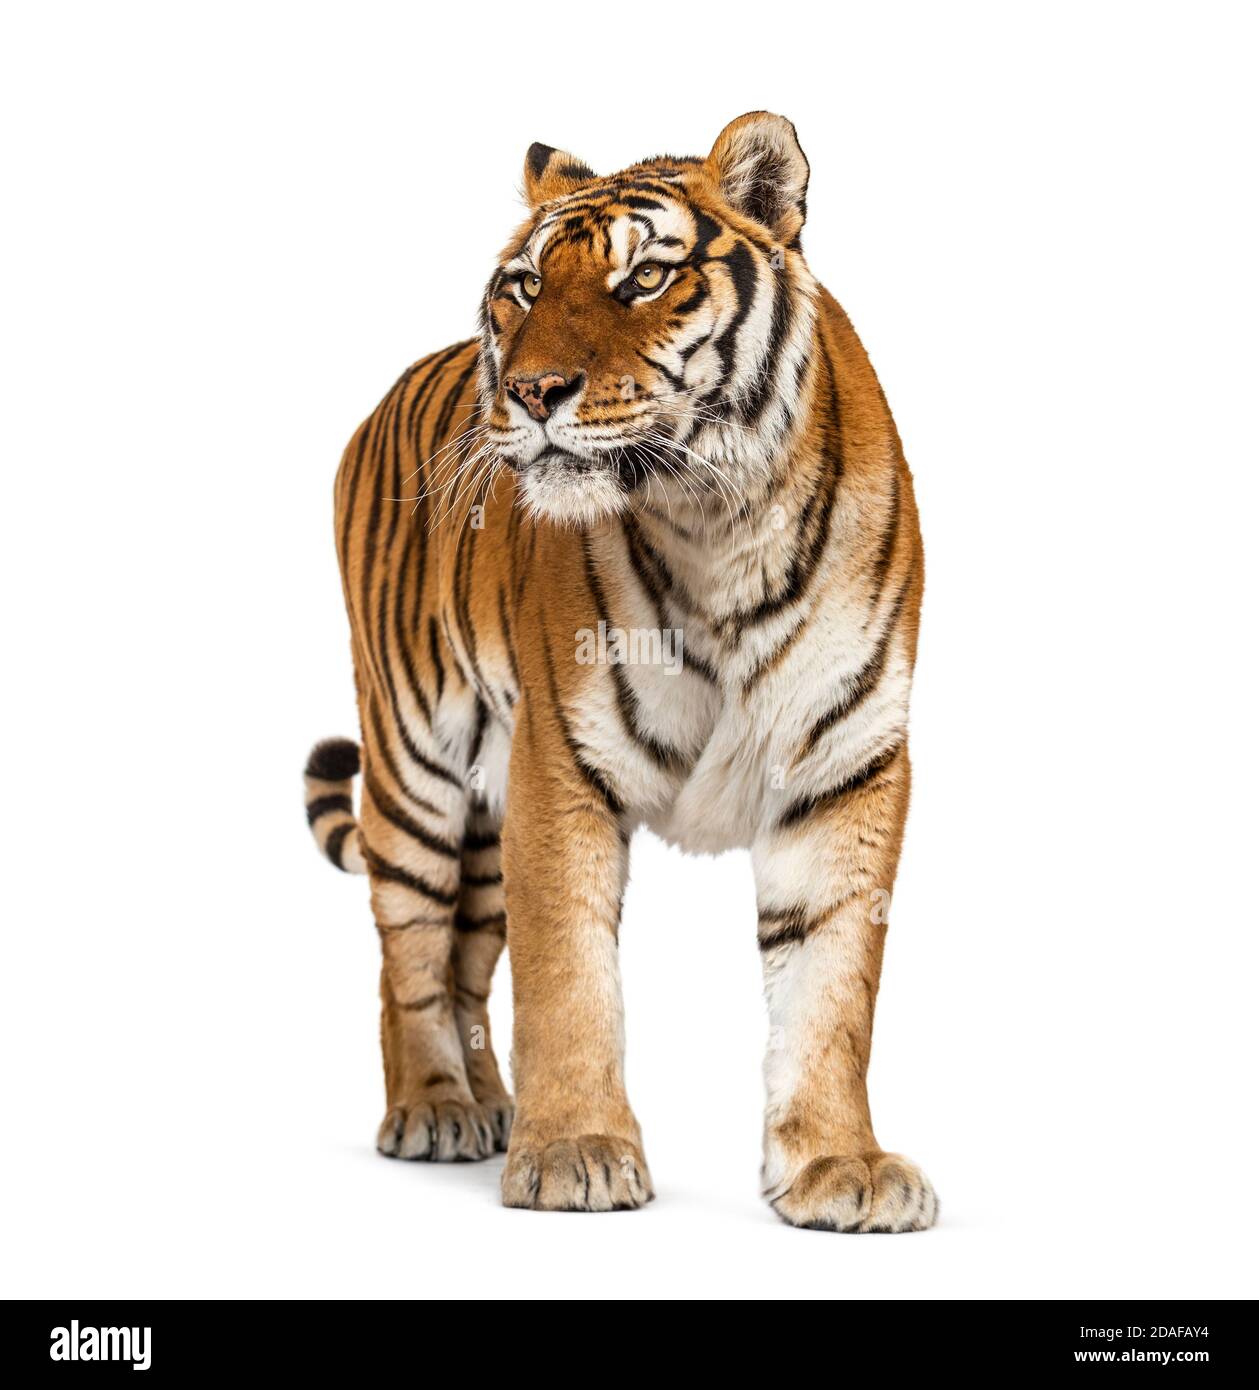 Những bức ảnh của con hổ đứng cao trong vẻ hùng mạnh, đầy uy lực sẽ khiến cho bạn có cảm giác như đang đối diện với một con quái vật dữ dội. Tự hào và cực kỳ ấn tượng, hình ảnh này thực sự đáng để thưởng thức.